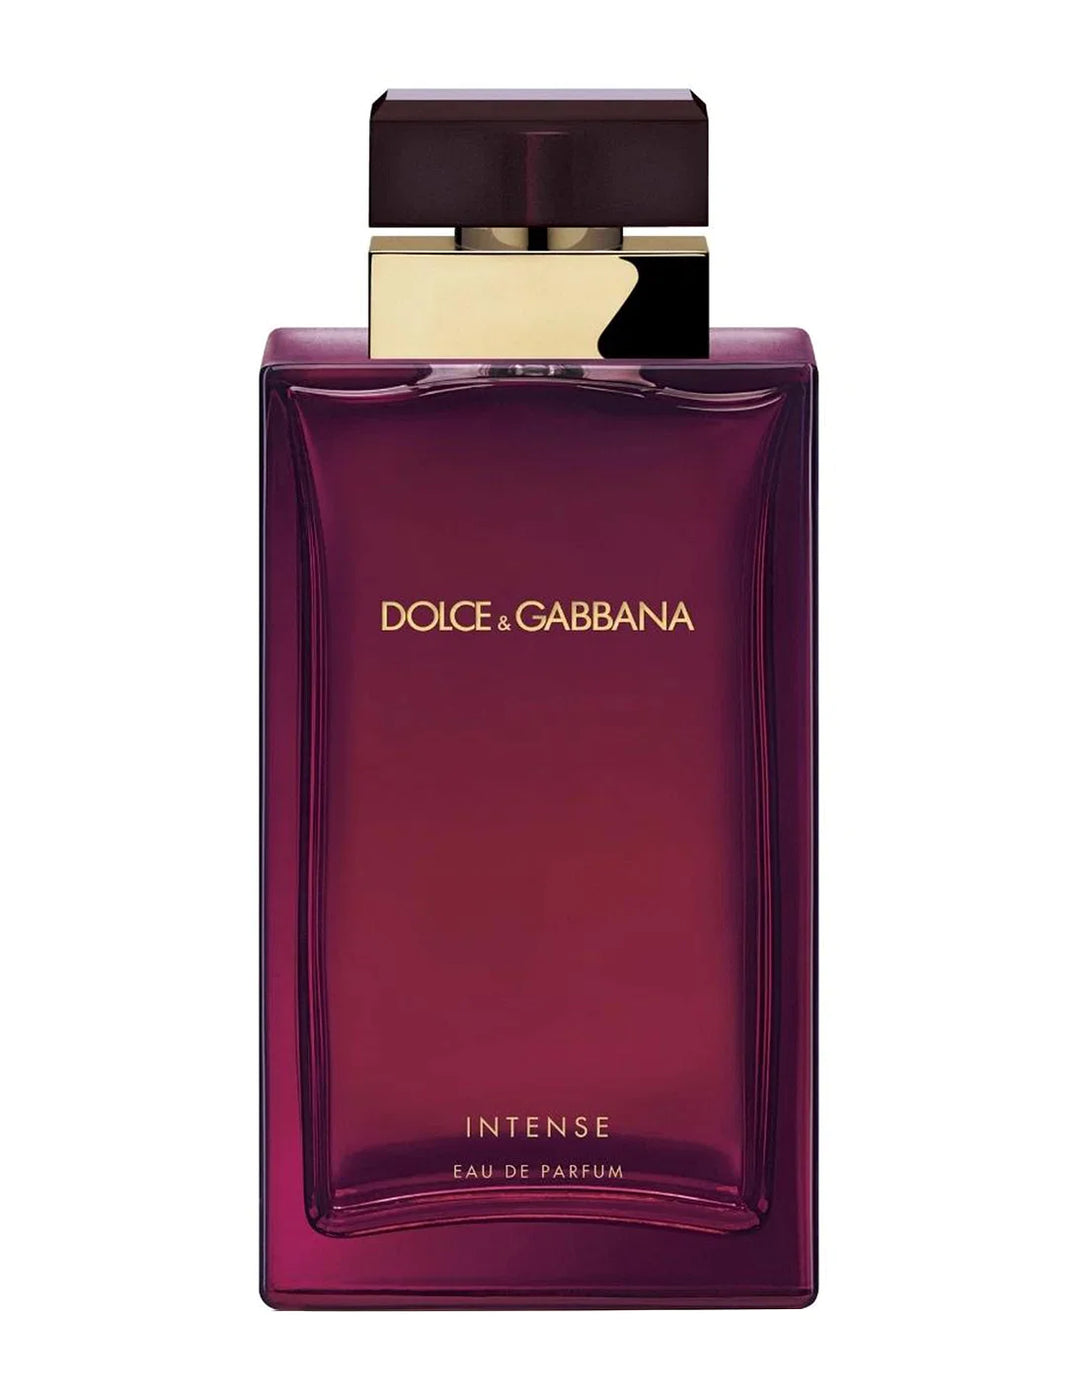 DOLCE & GABBANA Intense Eau De Parfum